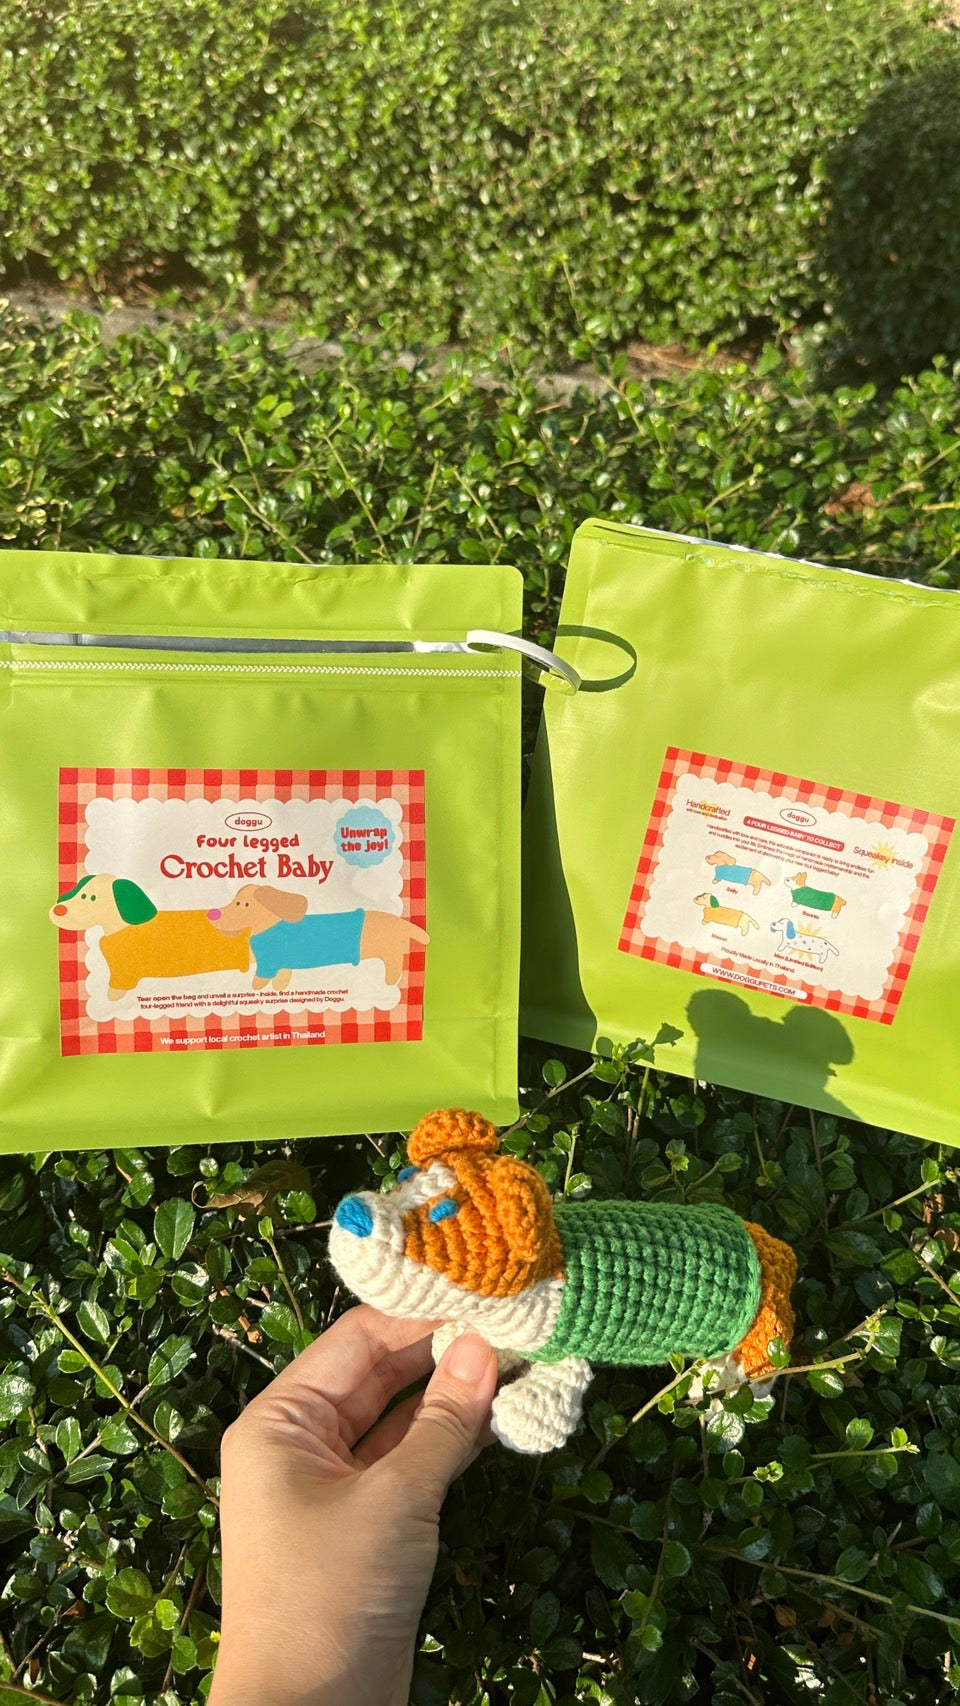 Four legged crochet baby Surprise bag